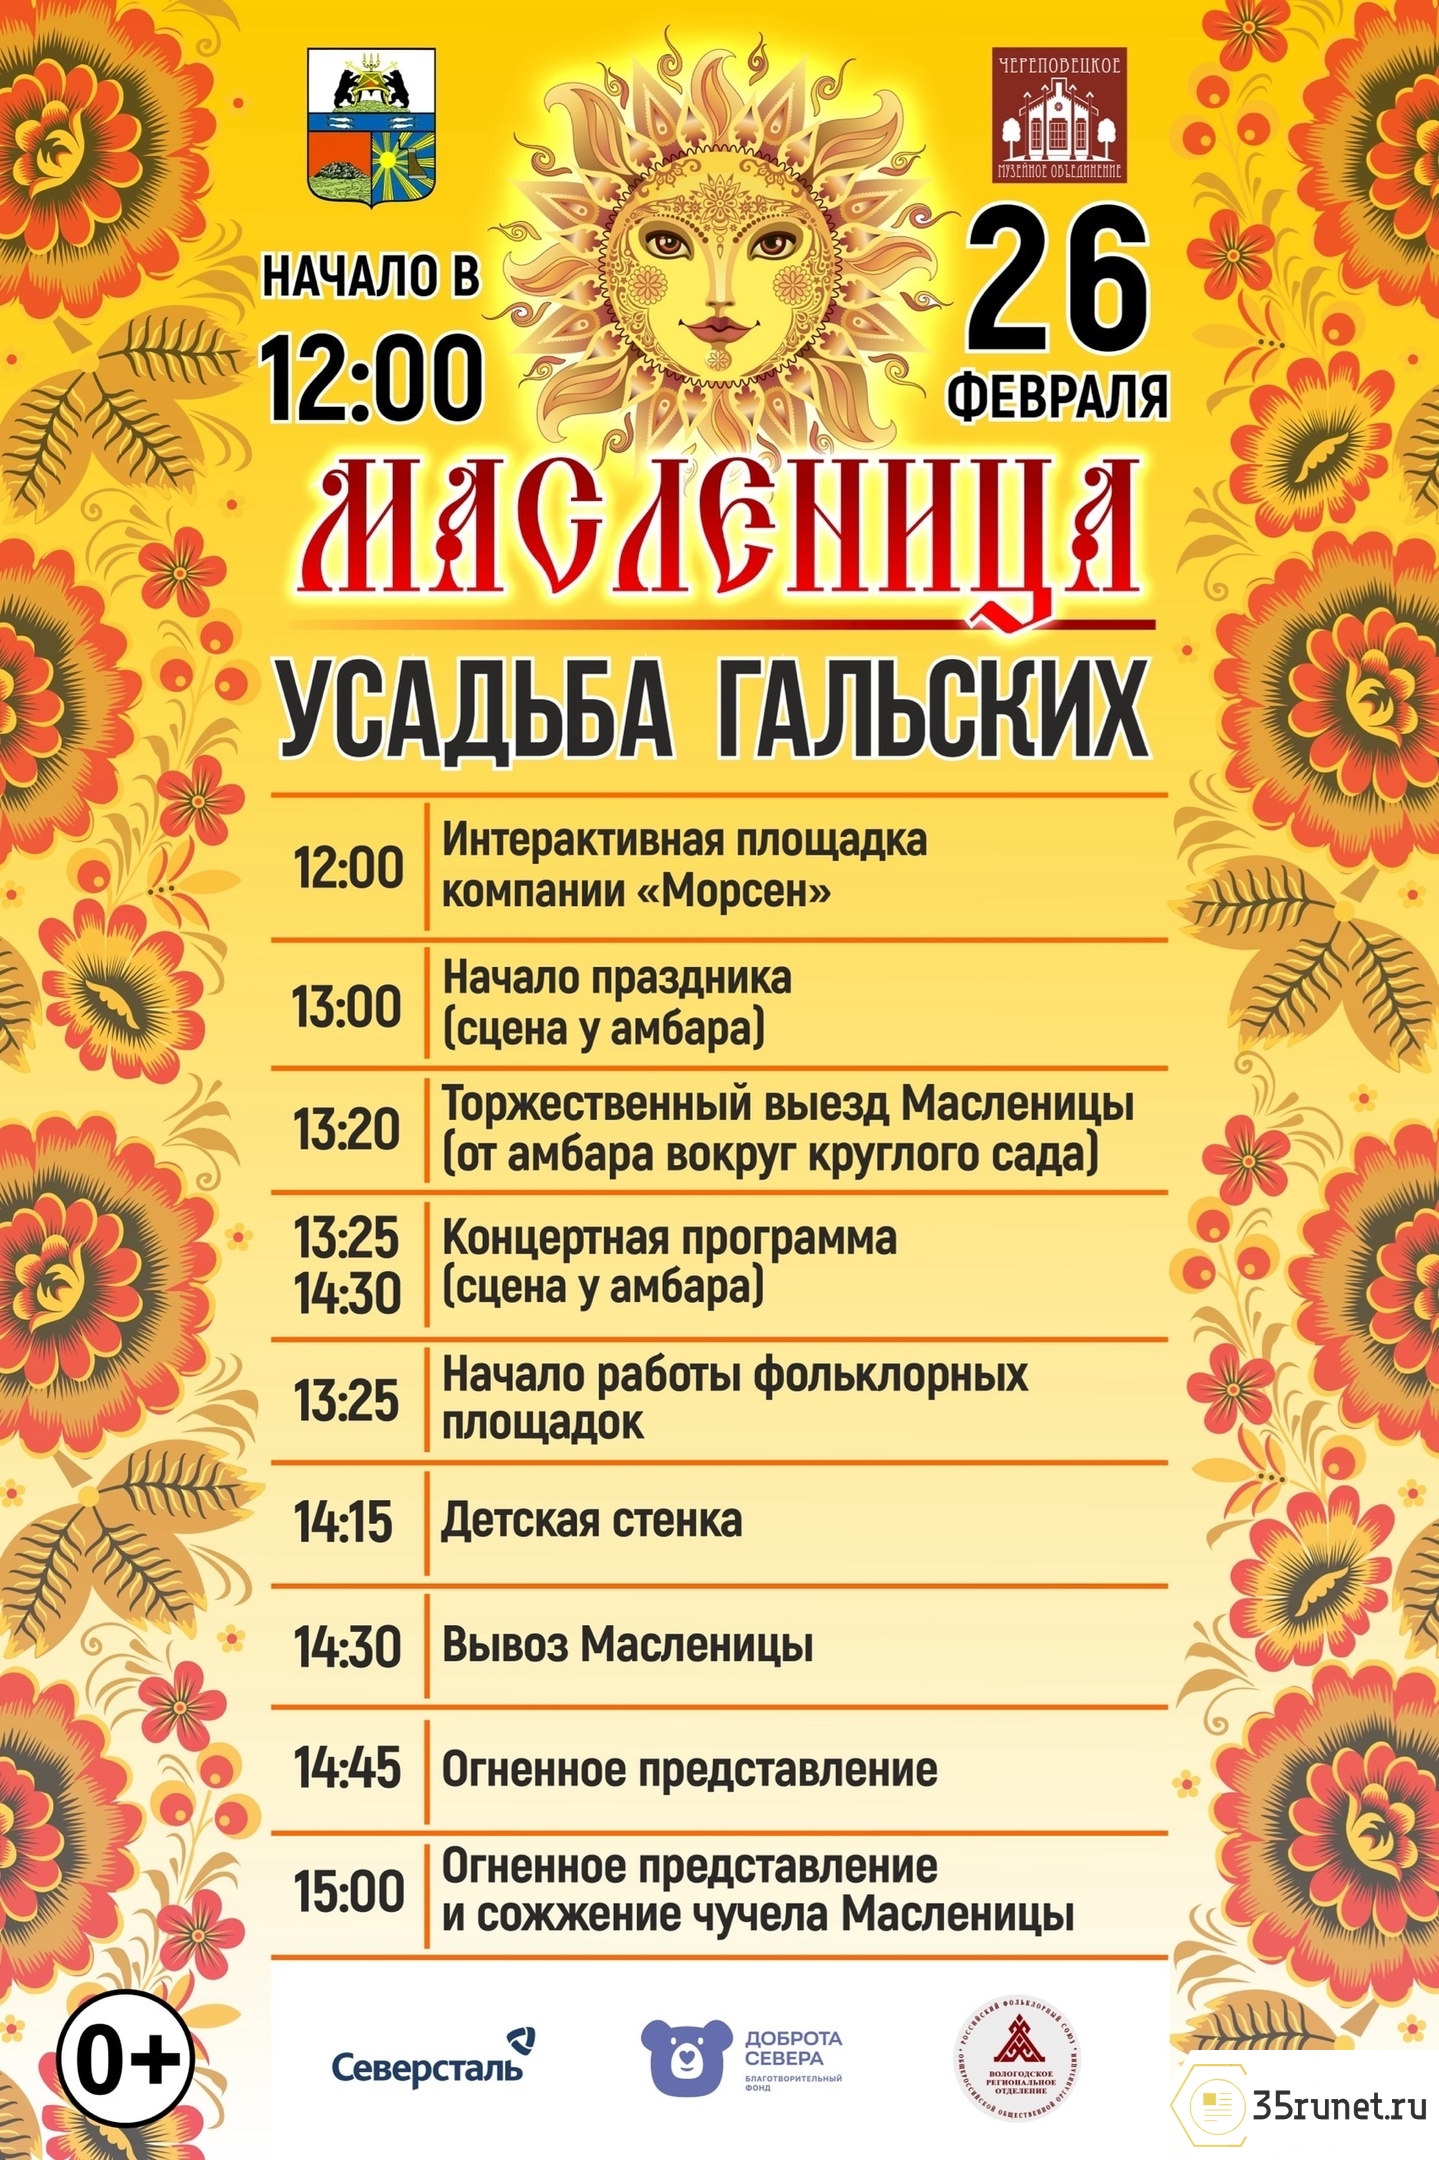 Программа масленичных гуляний в Вологде, Череповце и в районах Вологодской области 25 и 26 февраля